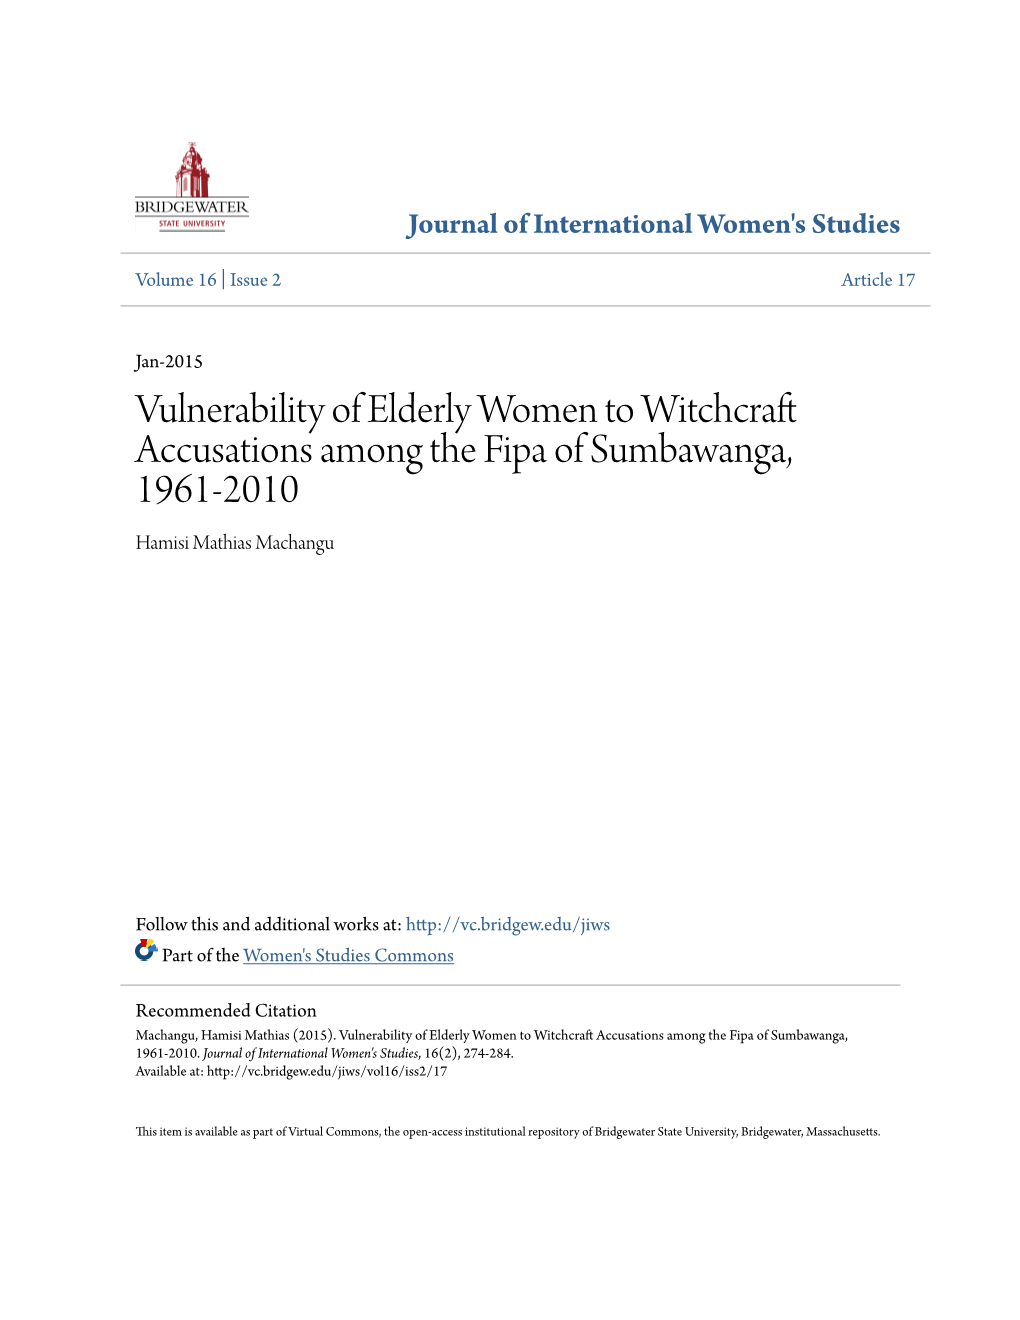 Vulnerability of Elderly Women to Witchcraft Accusations Among the Fipa of Sumbawanga, 1961-2010 Hamisi Mathias Machangu